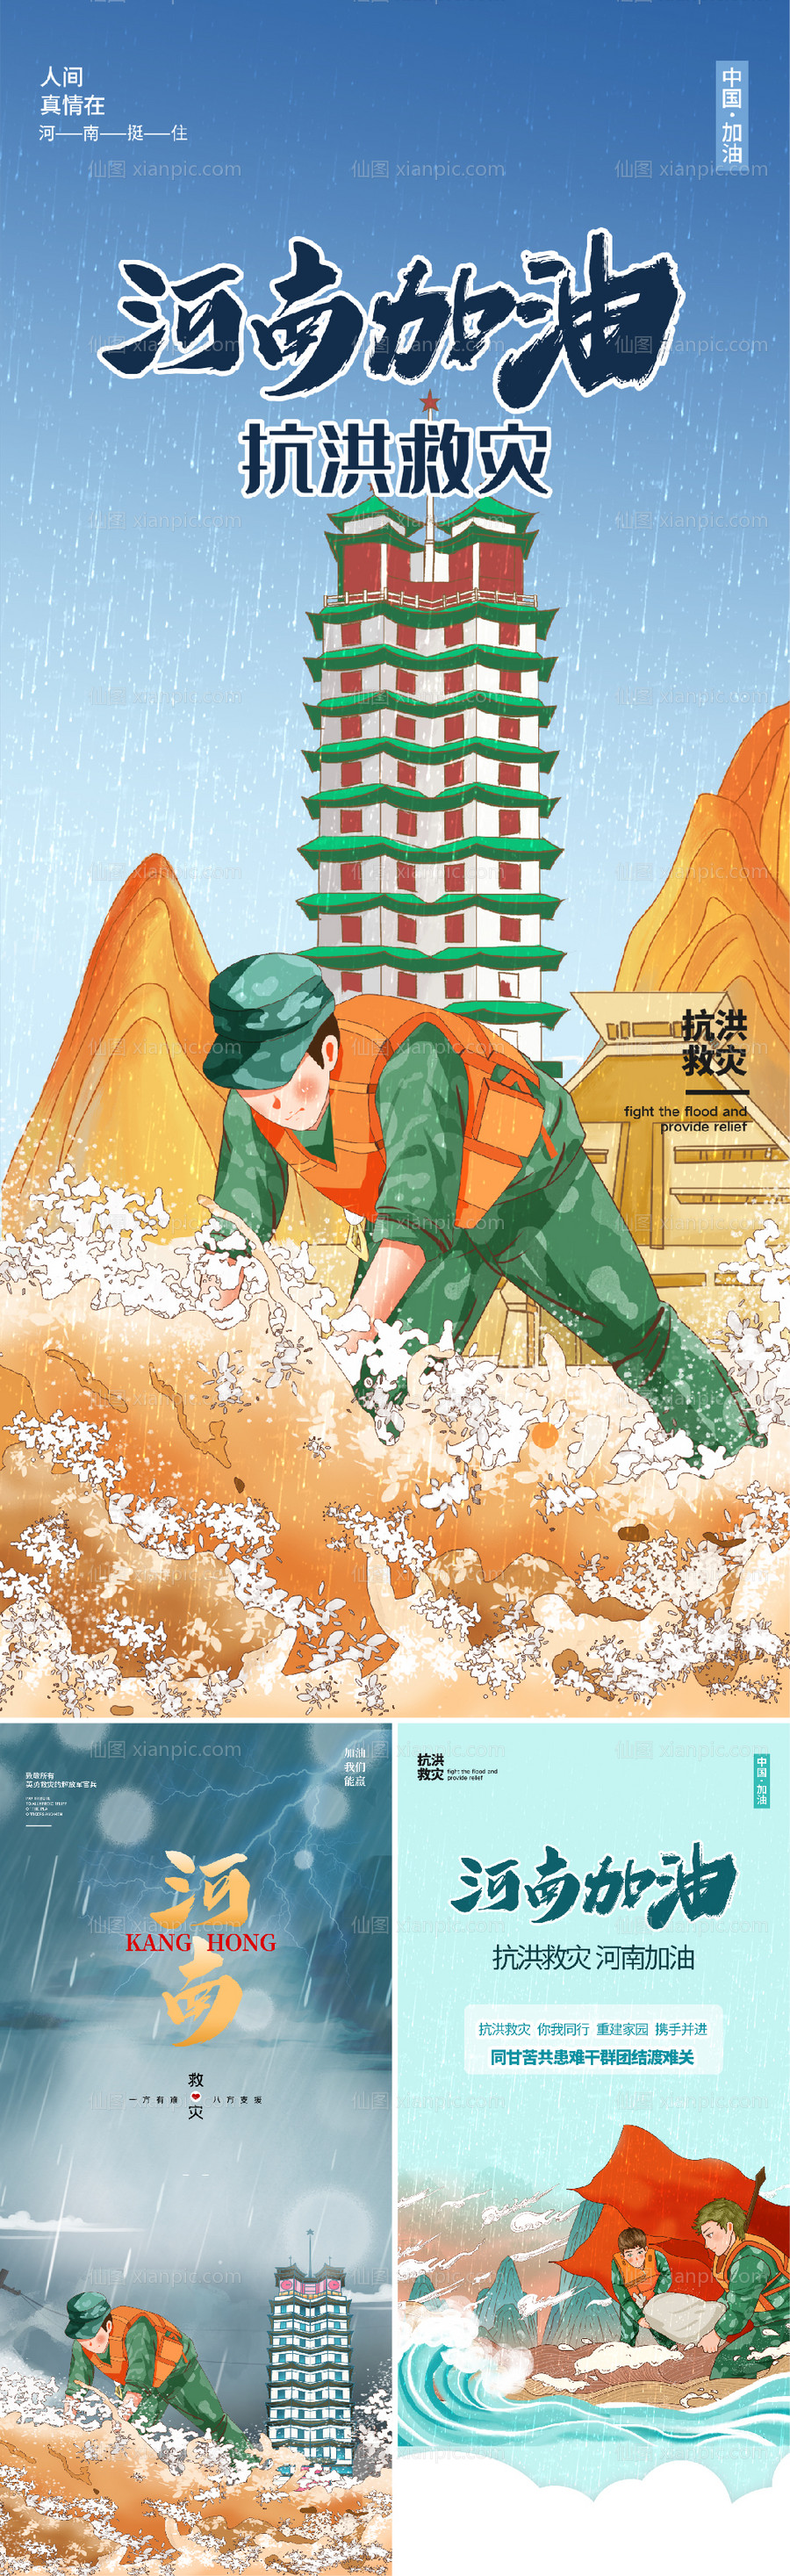 素材乐-河南郑州加油插画手绘海报 